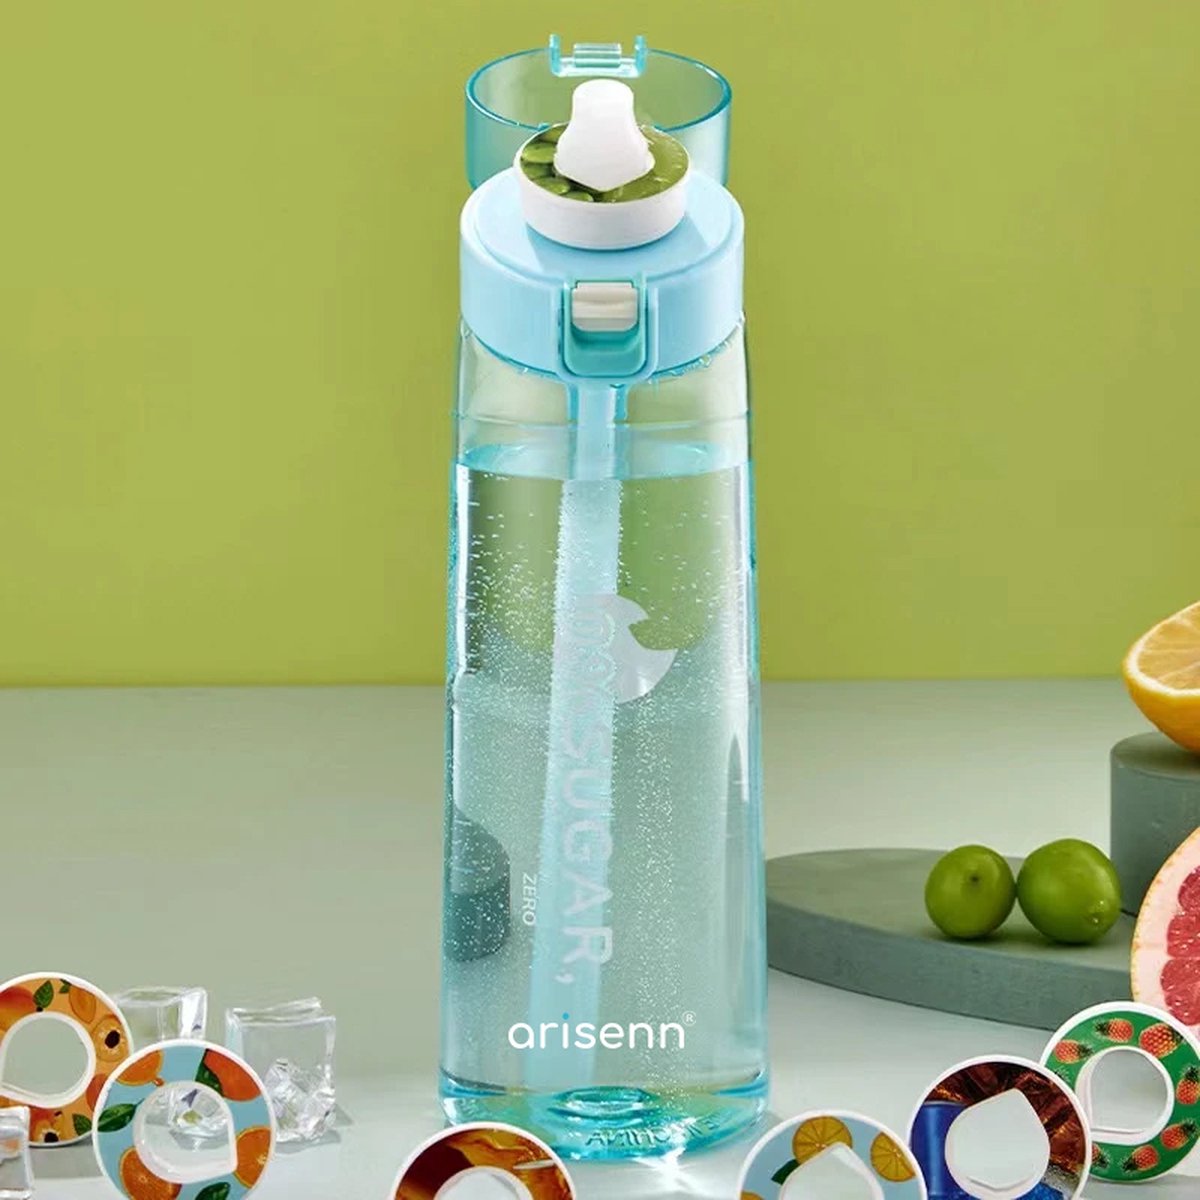 Arisenn® ZERO-fles - Geur Water - 100% Smaak, 0% Suiker, 0% Toevoegingen - Gezond & Lekker Drinken - BPA-vrij - Duurzaam - Helpt bij Hydratatie - 5L Smaak per Pod - Zuiver Water met Geur - Drinkfles 650ml - Blauw